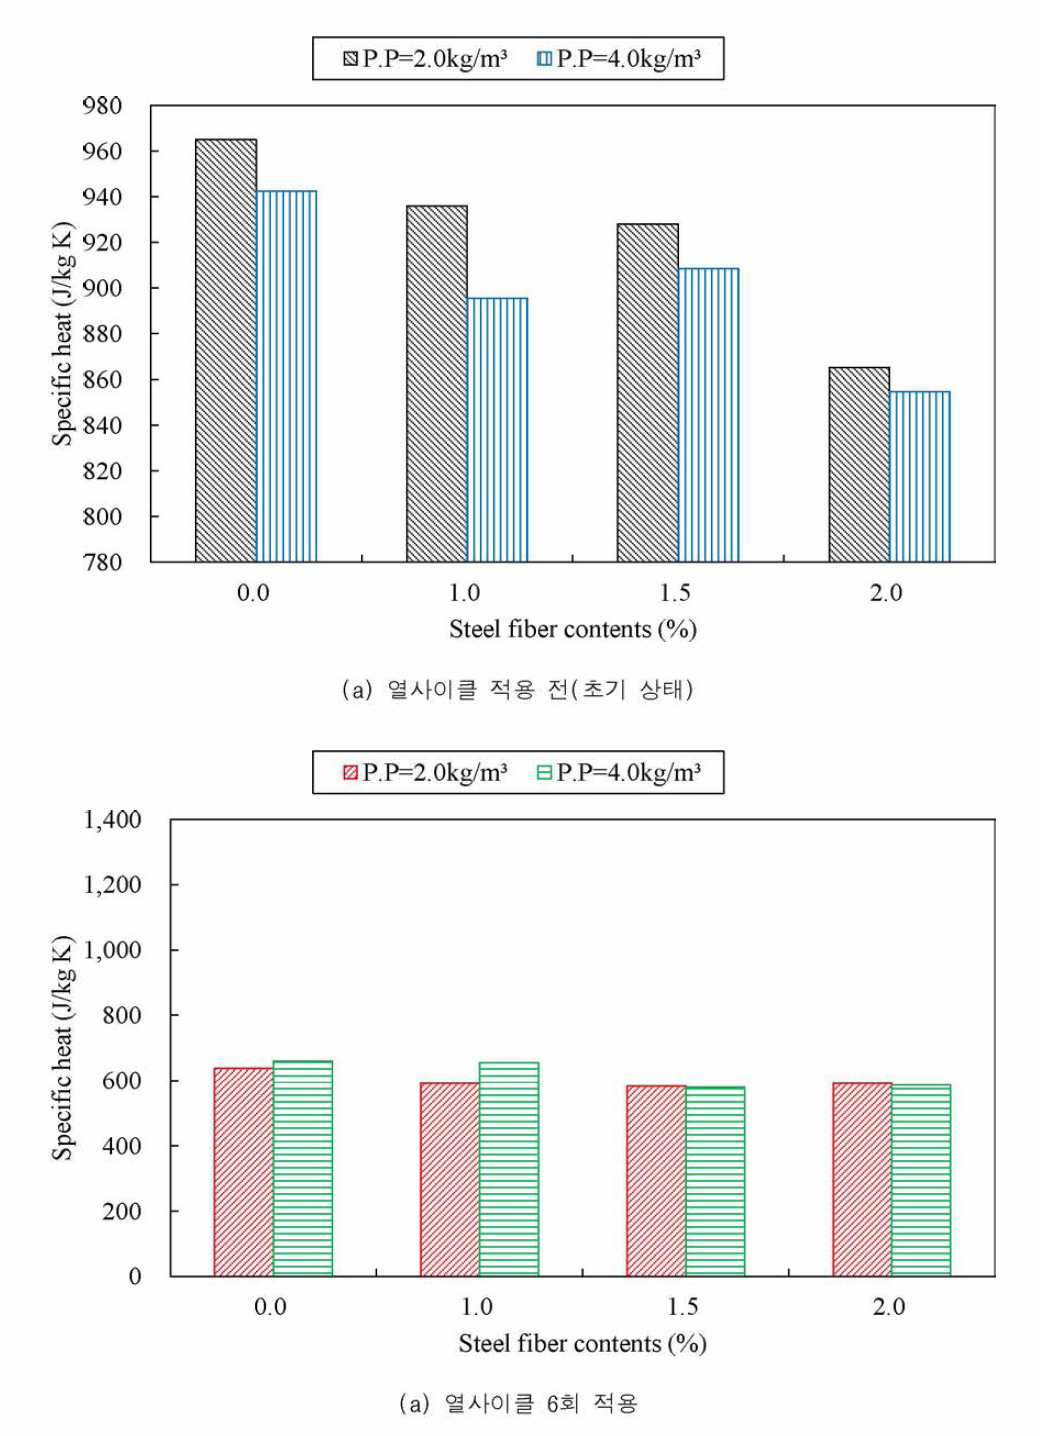 강섬유 혼입률별 P.P 섬유 혼입량에 따른 비열 결과 비교